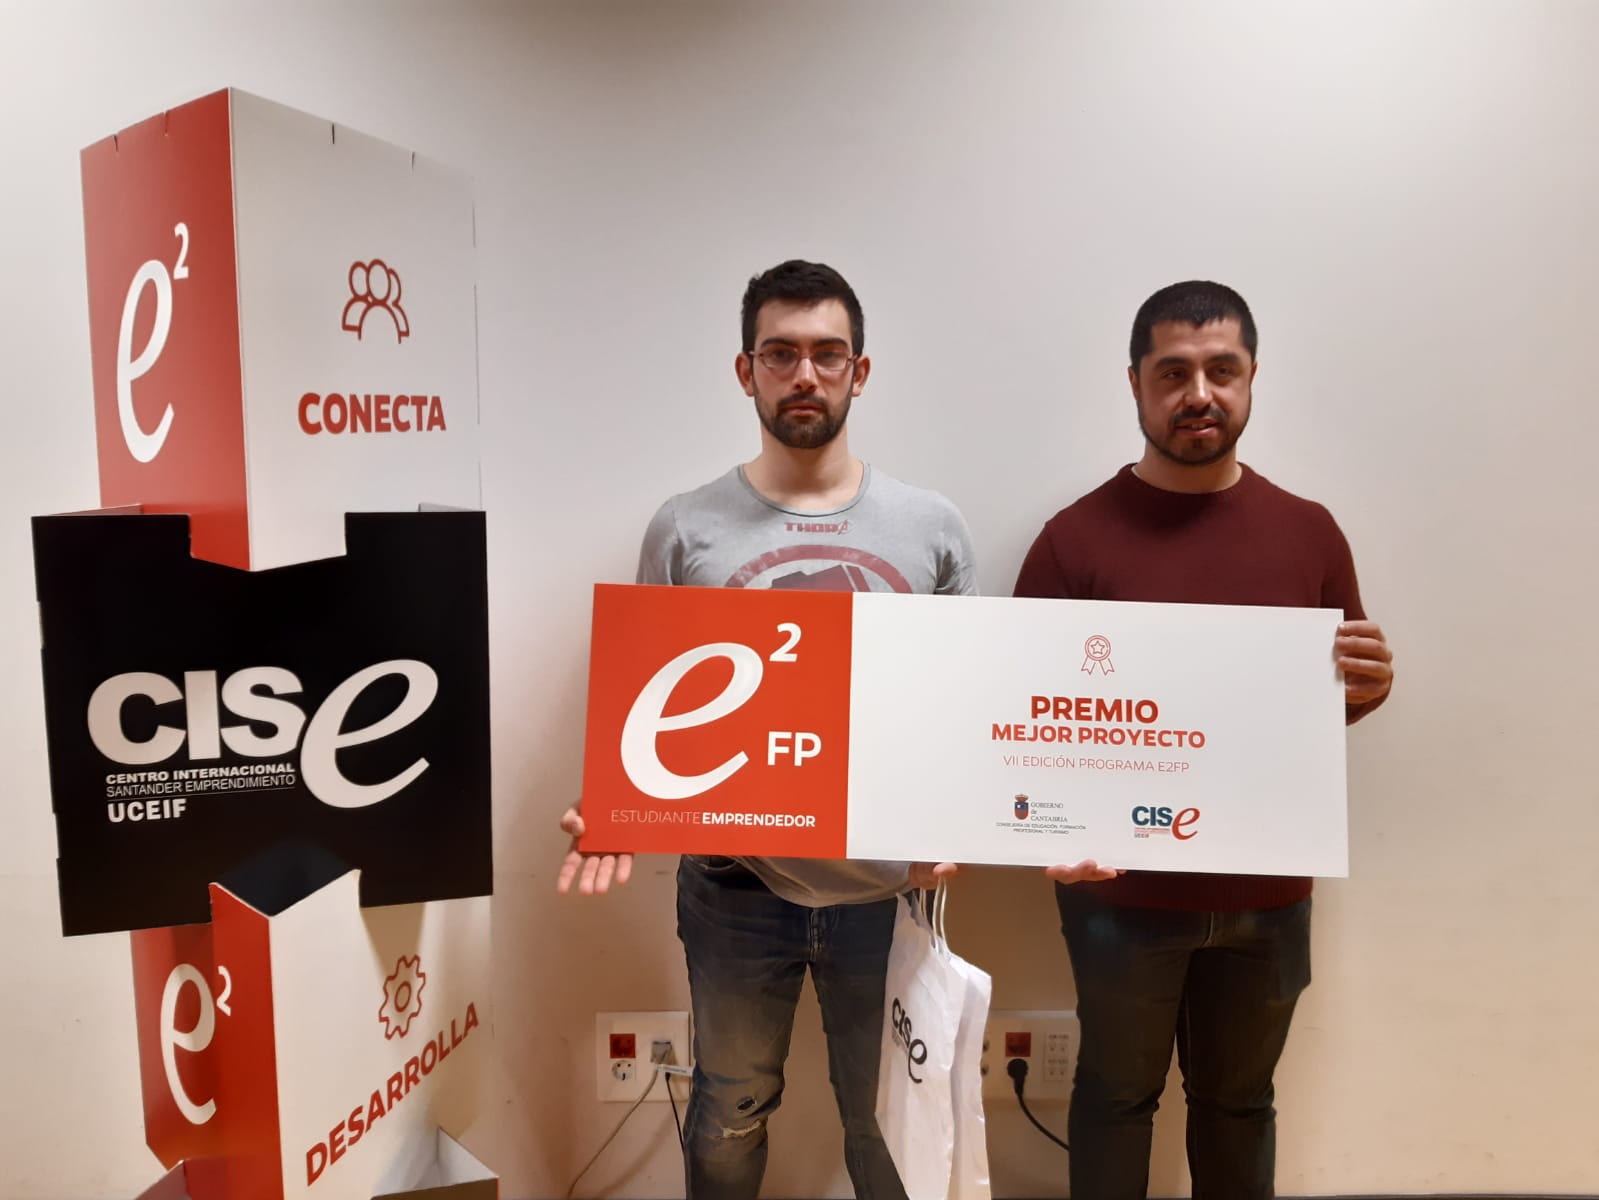 Francisco Martínez y David Pla han formado parte de Ecolabaru, el proyecto ganador del certamen.